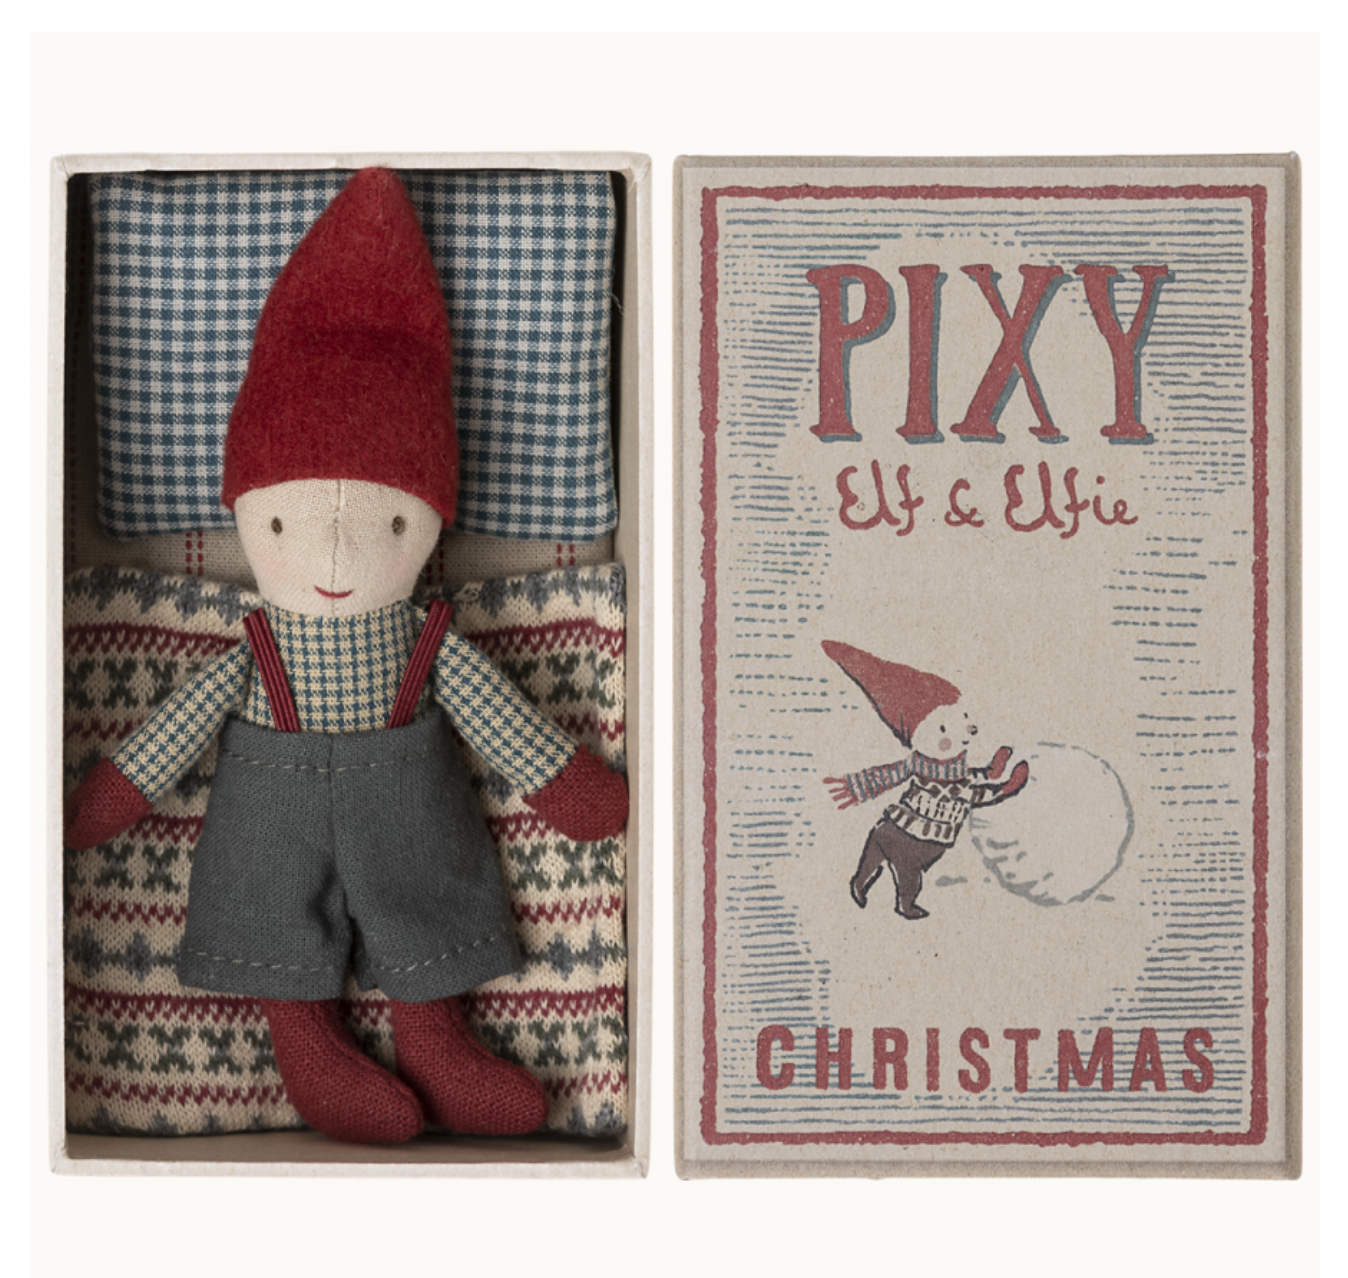 Pixy Elf in matchbox by Maileg